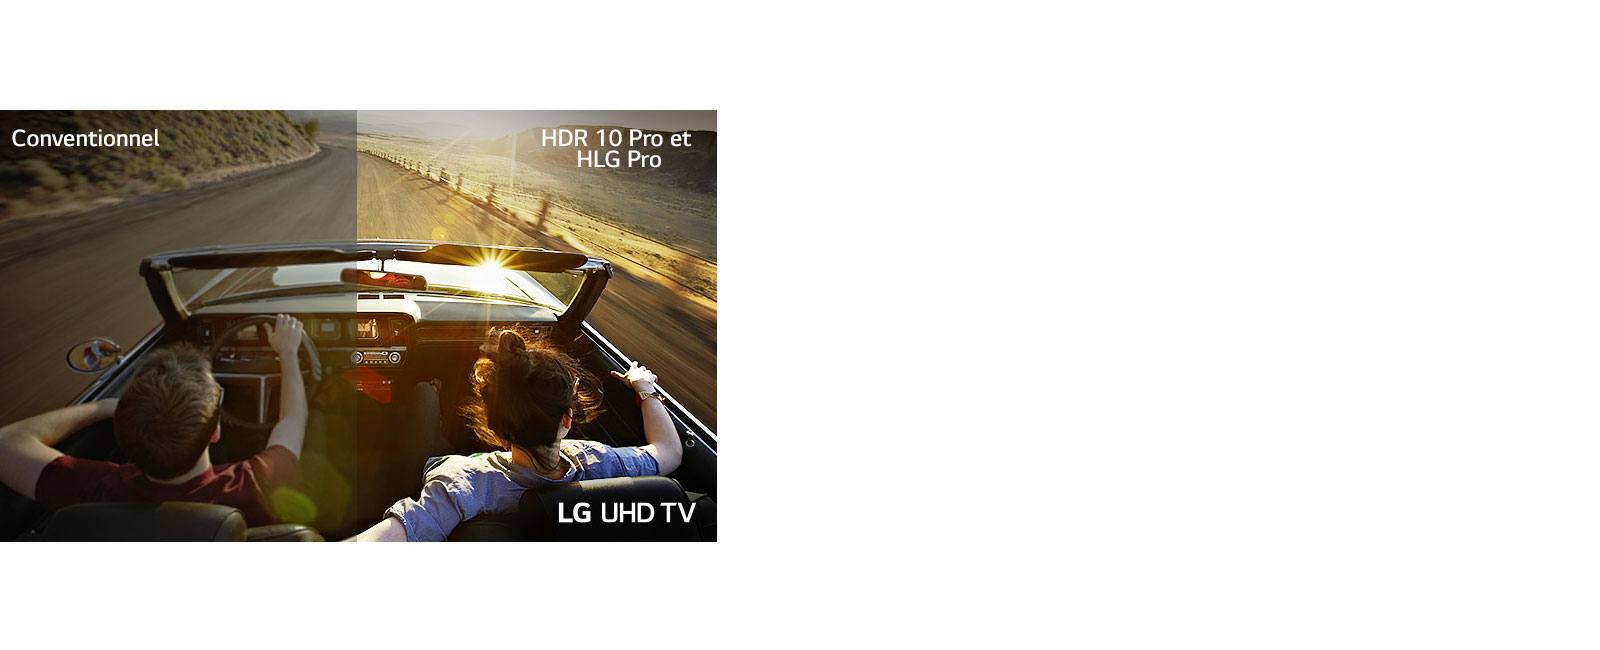 Un couple au volant d'un véhicule roulant sur une route. Une moitié de l'image est affichée sur un écran classique avec une mauvaise qualité d'image. L'autre moitié est affichée sur le téléviseur UHD LG avec une qualité d'image nette et vive.